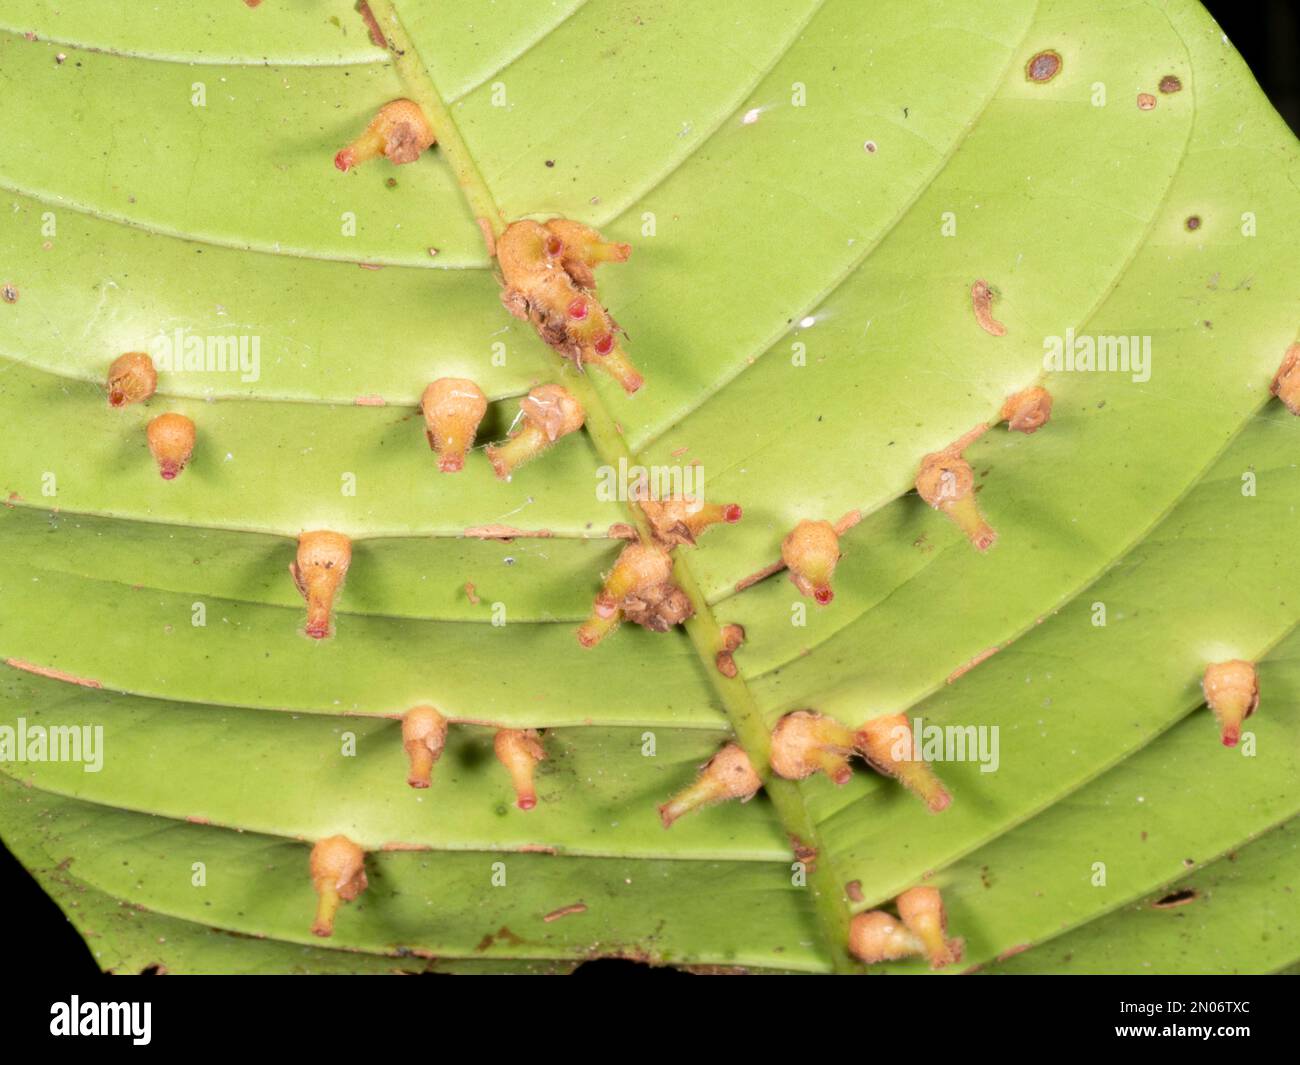 Feuille d'un arbuste de sous-étage recouvert de galettes, résultant d'une attaque d'insectes, de bactéries ou de champignons. Croissance dans la forêt tropicale dans la province d'Orellana, en Équateur Banque D'Images